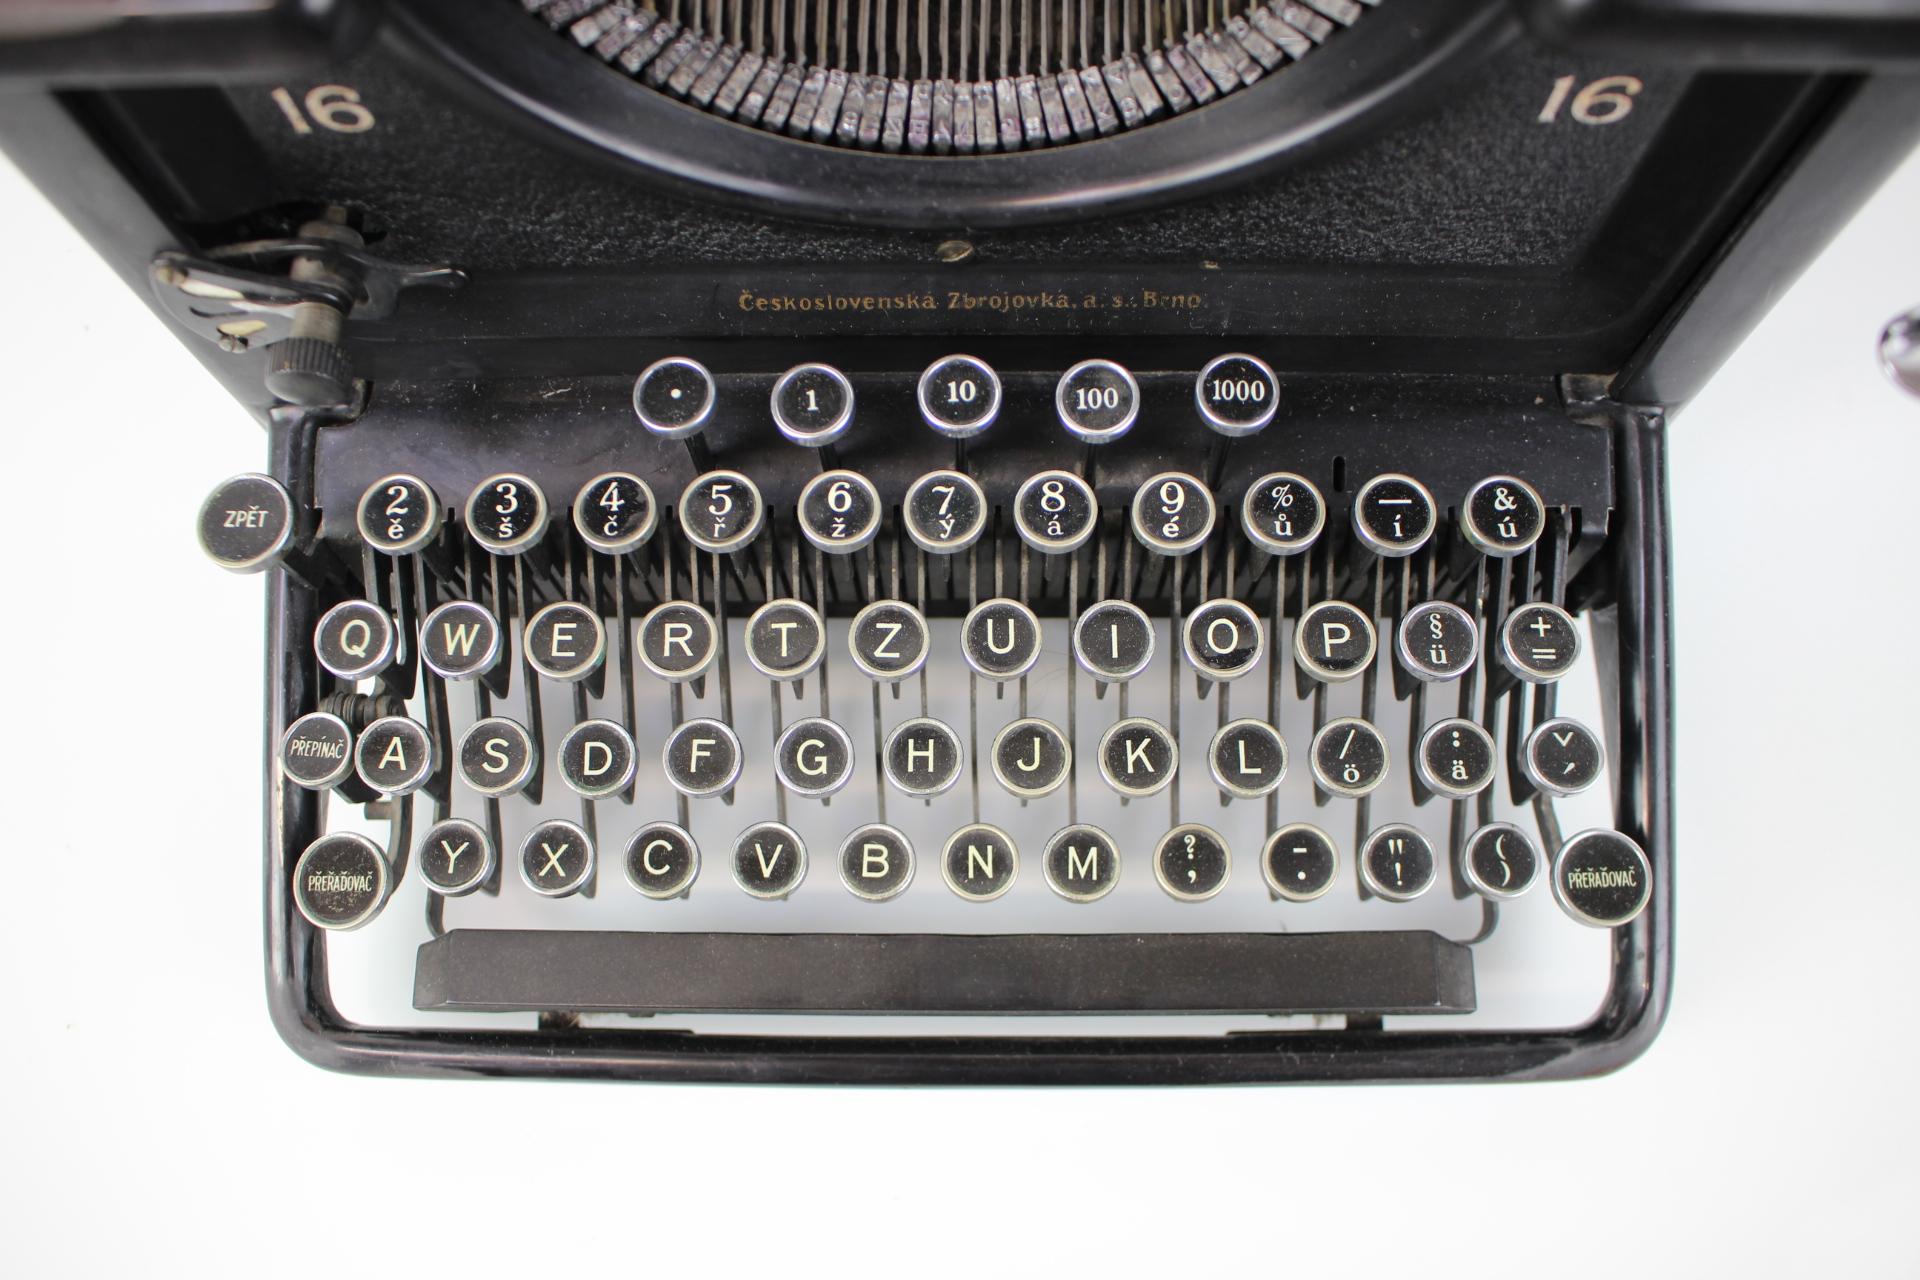 remington typewriter models